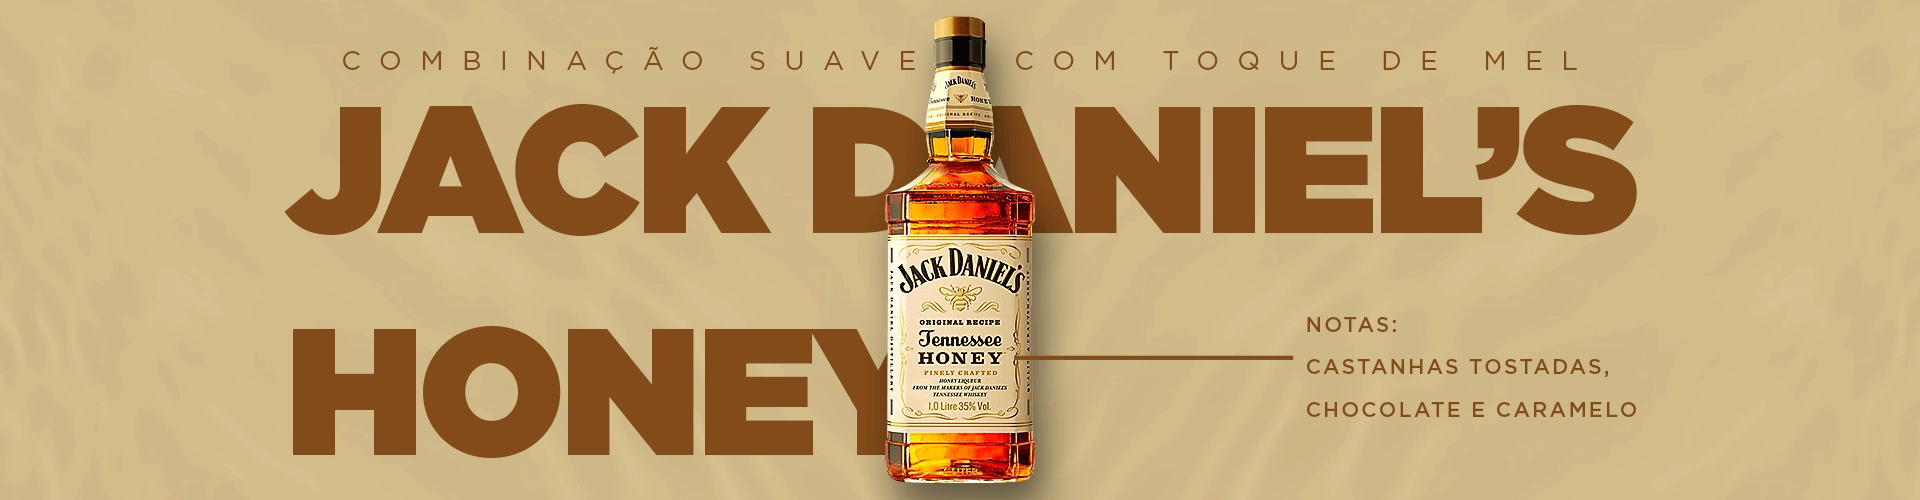 Slider - Jack Daniel's Honey